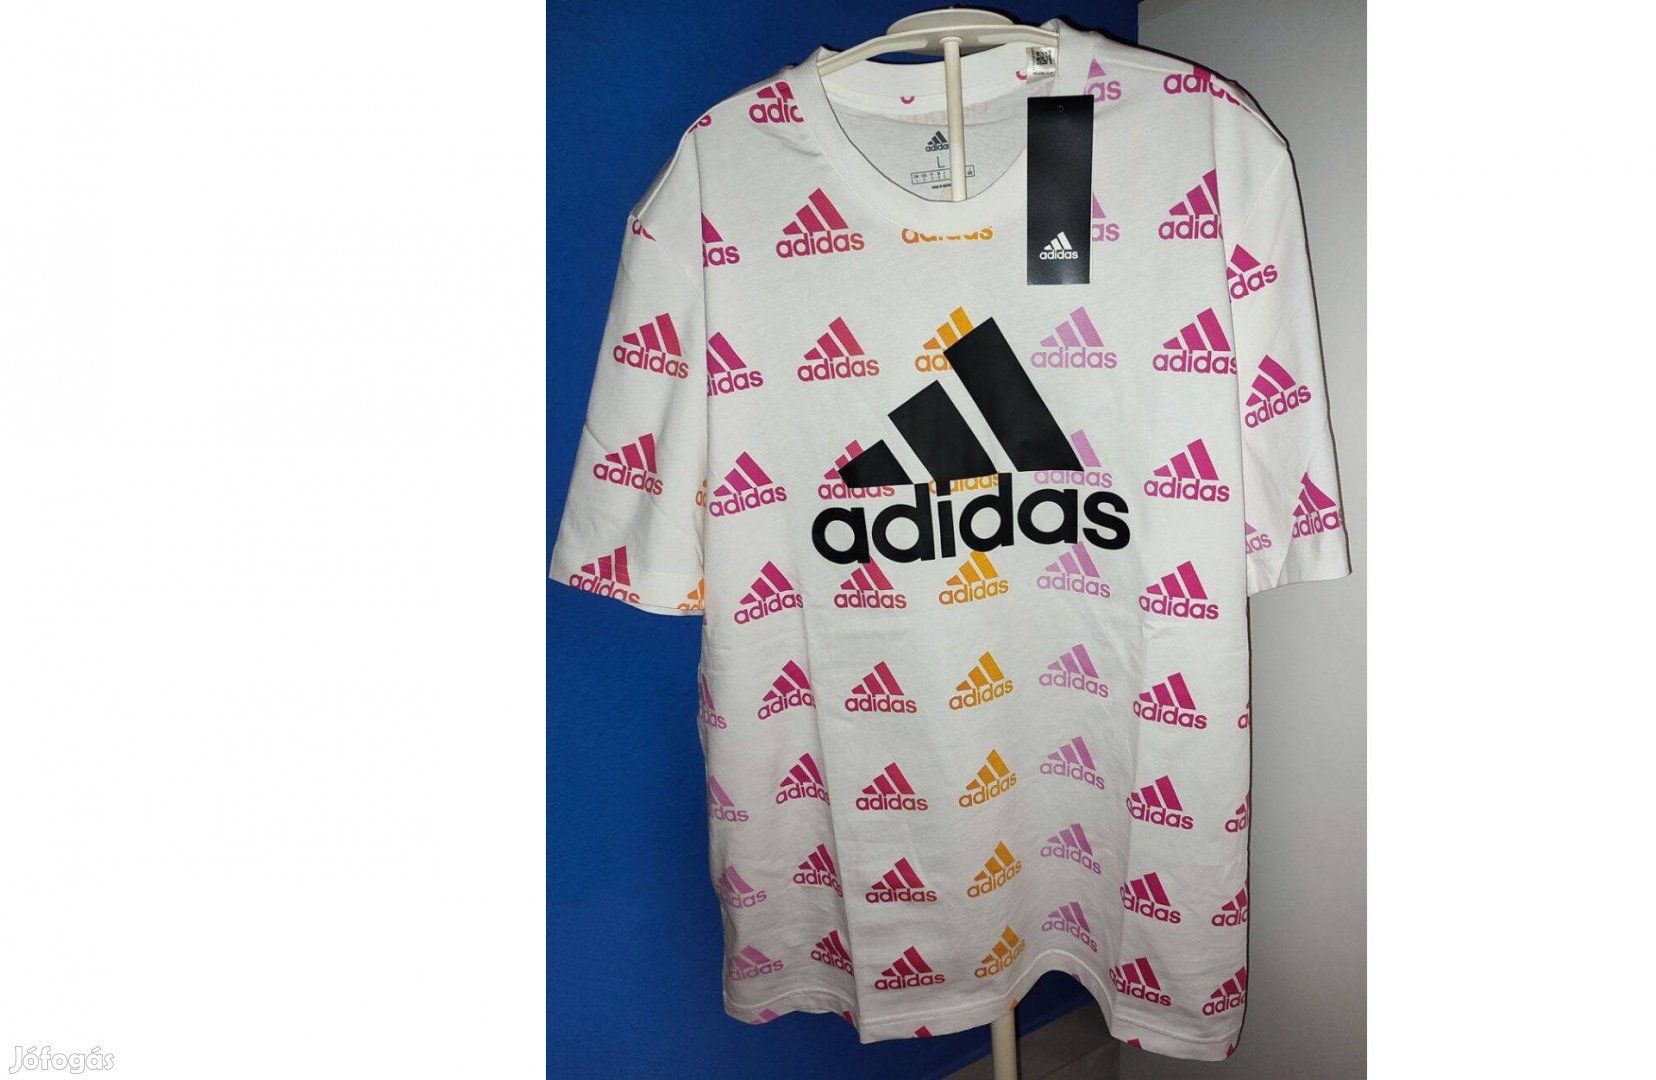 Adidas eredeti, új, címkés fehér - mintás póló (L-es)